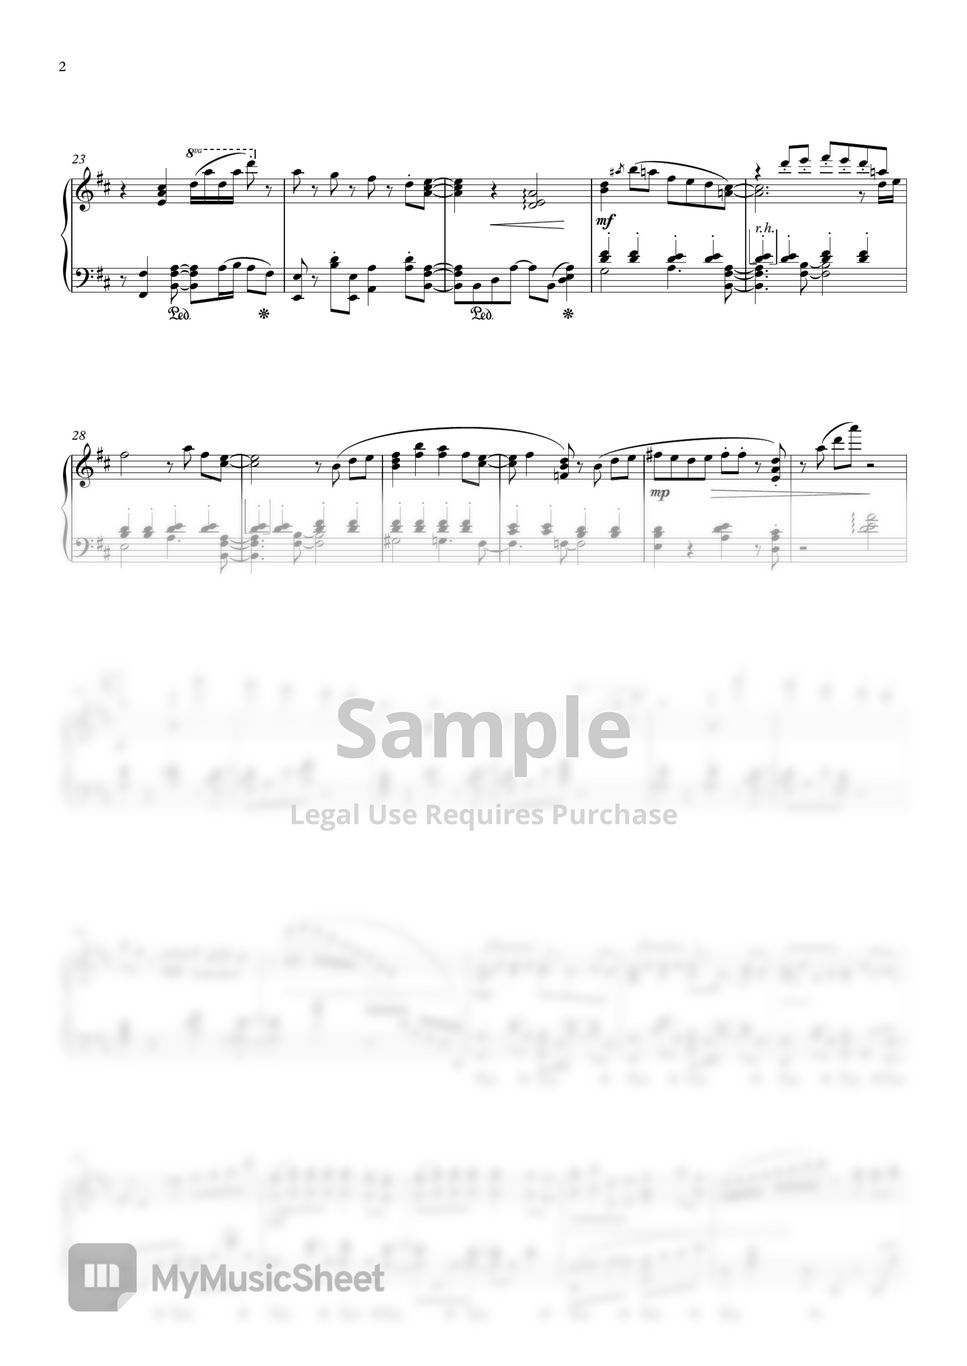 碧蓝档案 - 「カルバノグの兎」Theme 1 (钢琴版) by Singulfer-小言